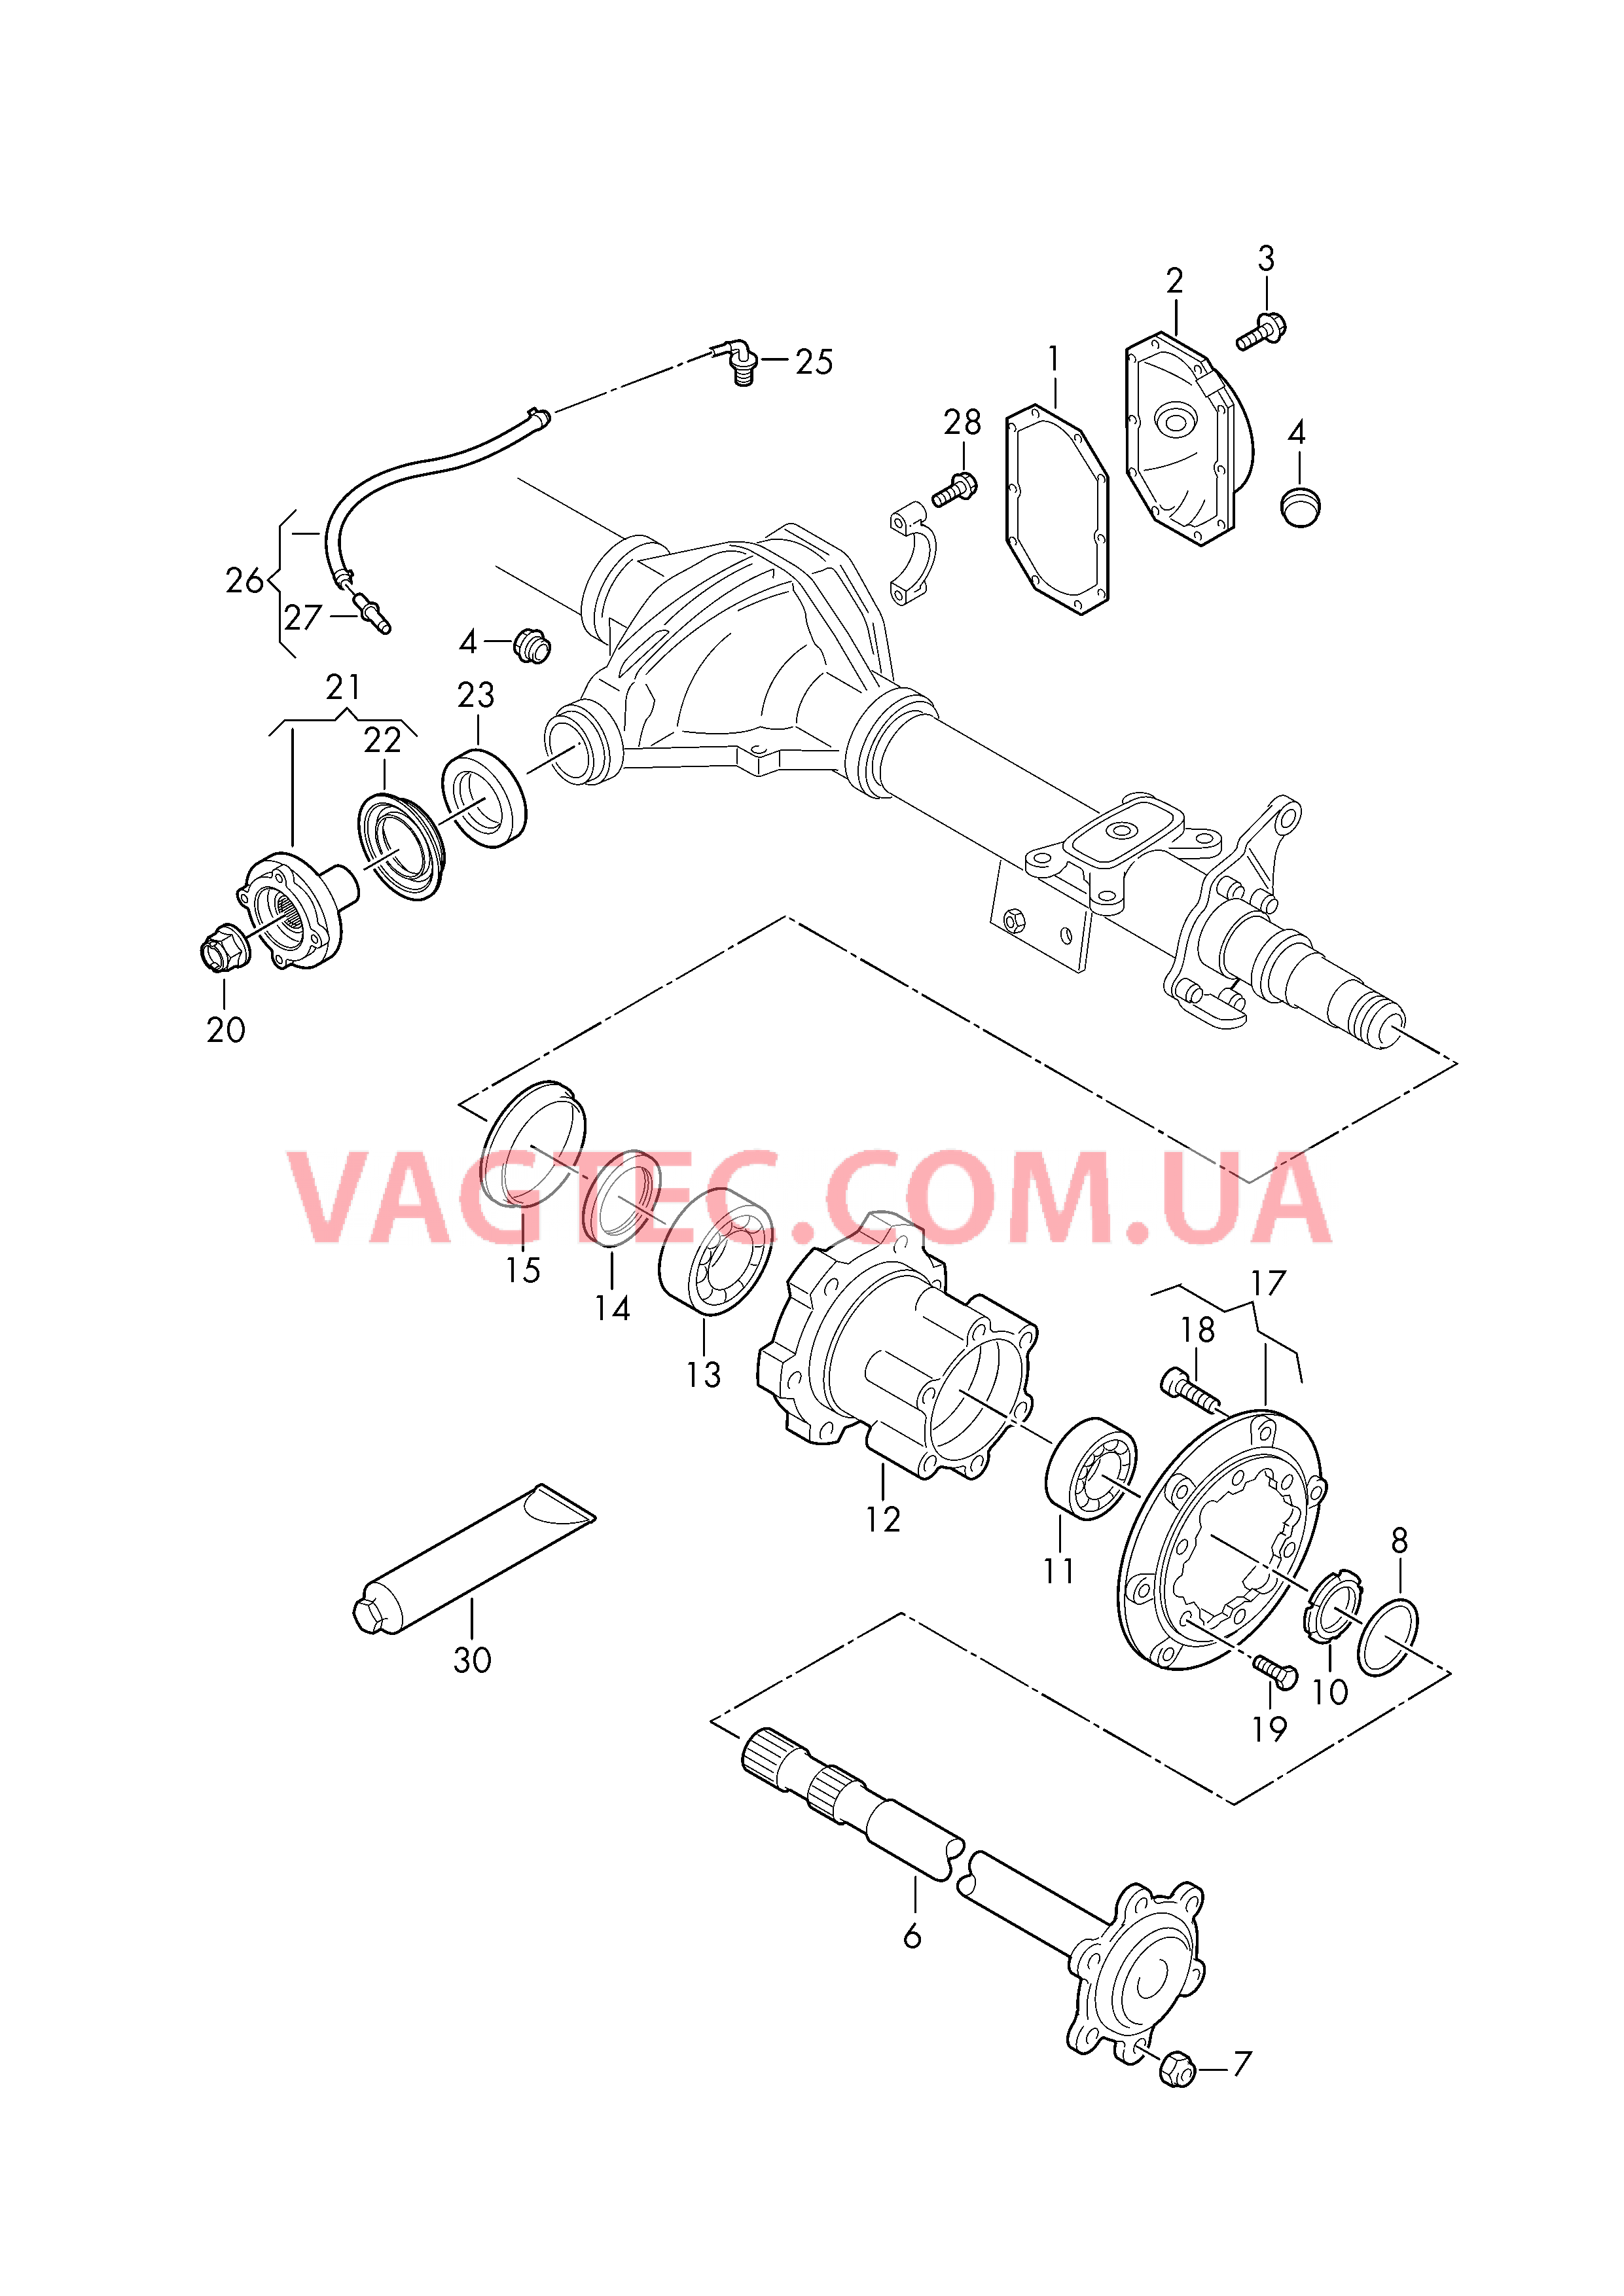 Вал привода задних колес Ступица Вентиляционный патрубок  для VOLKSWAGEN Crafter 2019